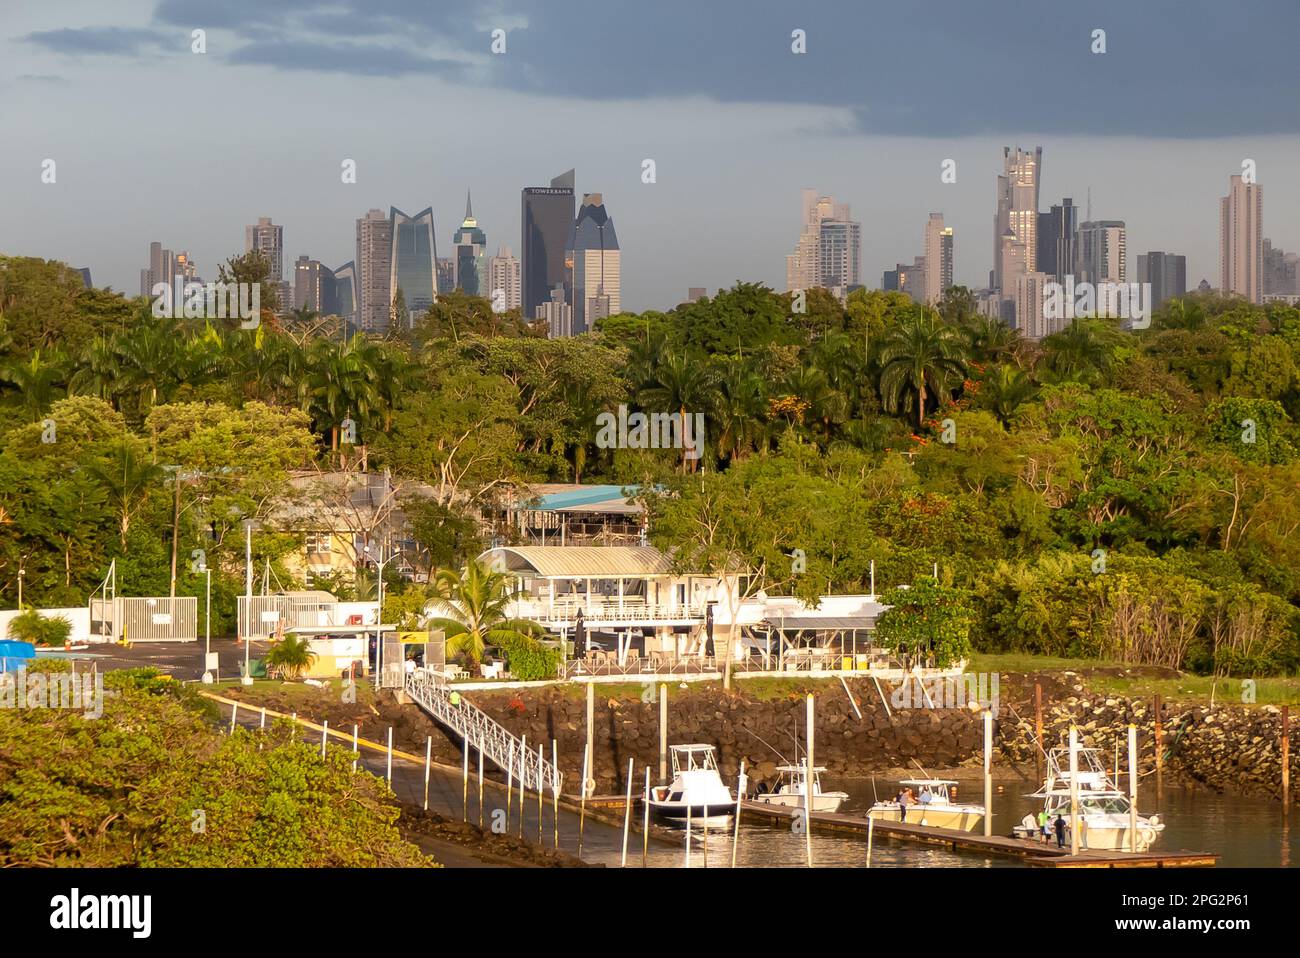 Le canal de Panama : les tours de la ville de Panama qui apparaissent au-dessus de la forêt tropicale. Banque D'Images